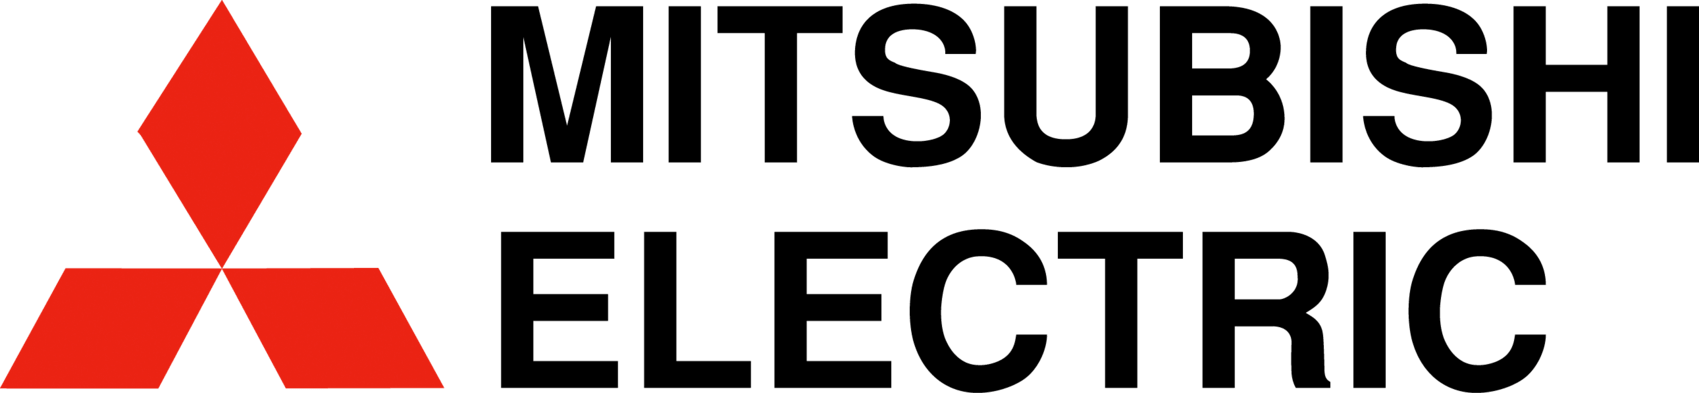 Утилизация кондиционеров Mitsubishi Electric 